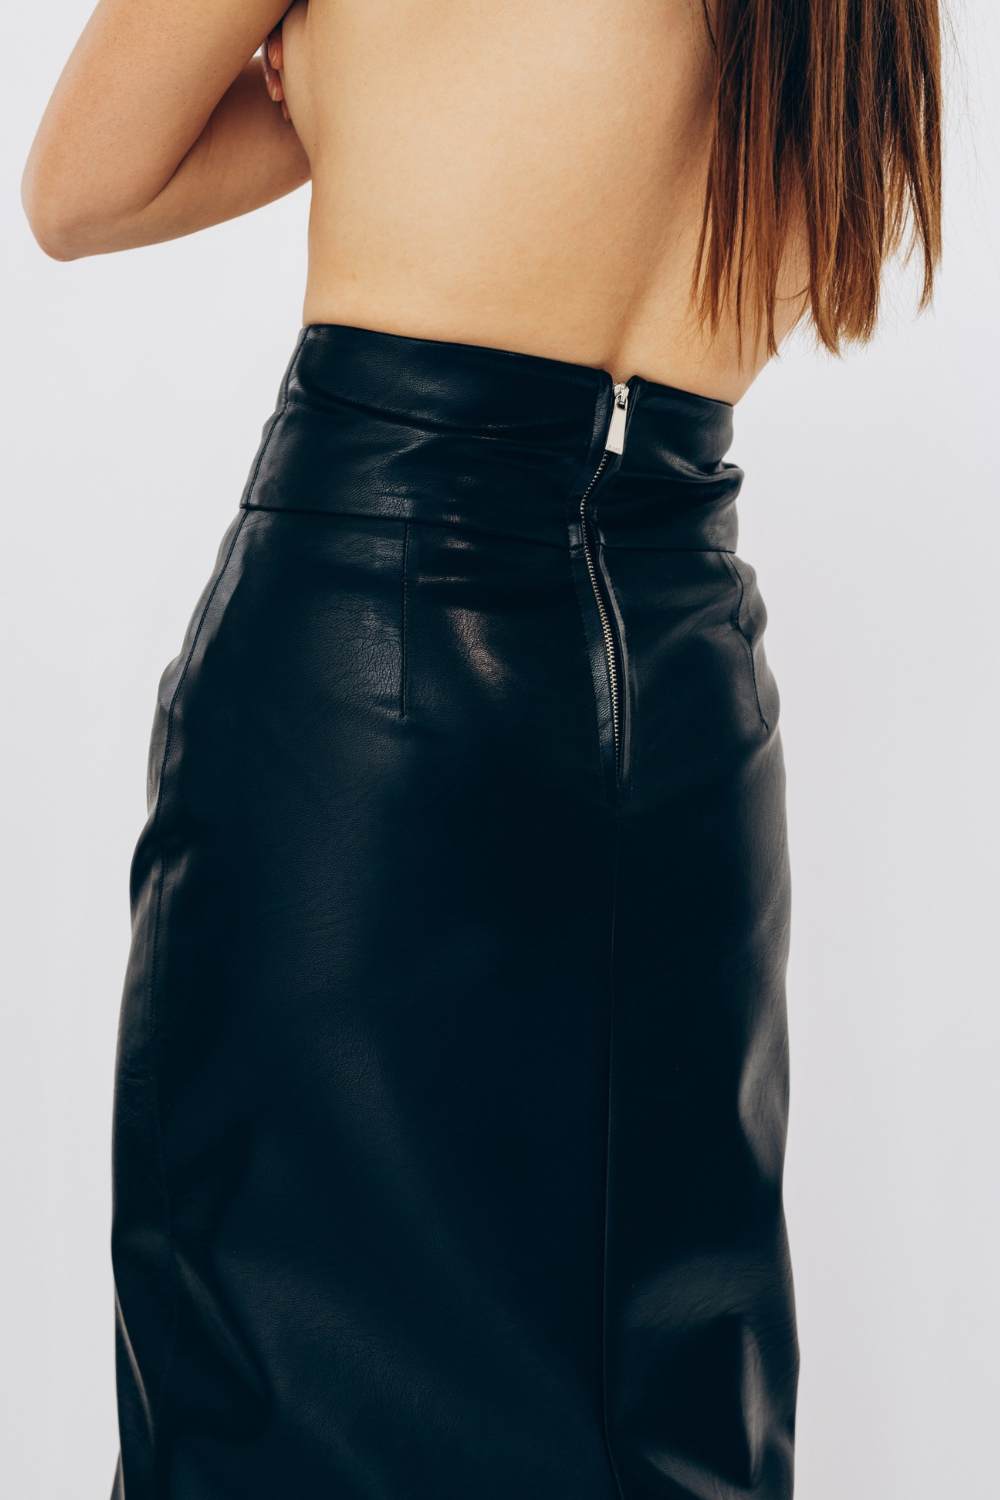 Eco-leather skirt, black, (MashaBakaeva), В-38